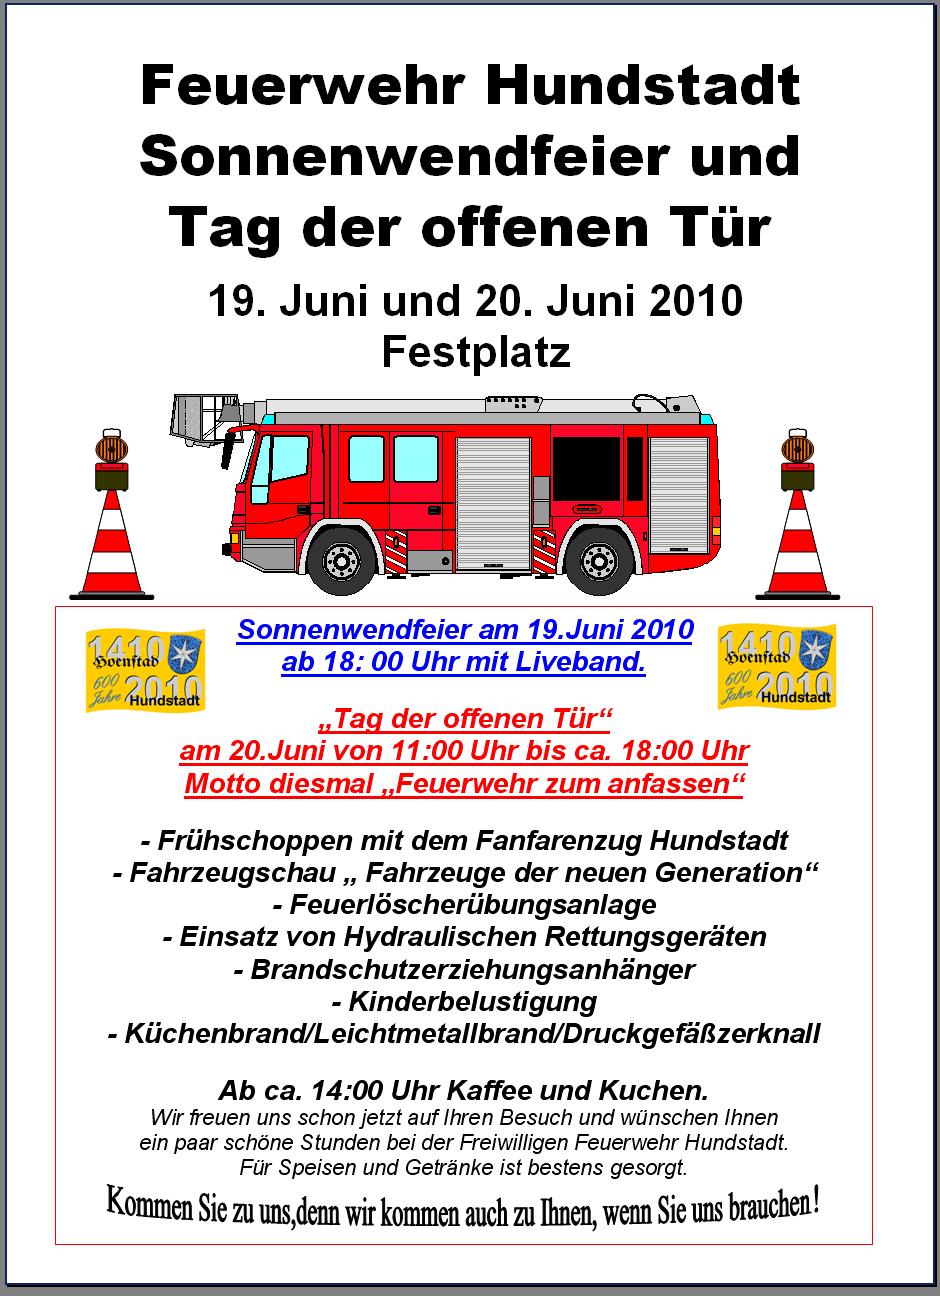 Feuerwehr - Gestaltung FFW Hundstadt